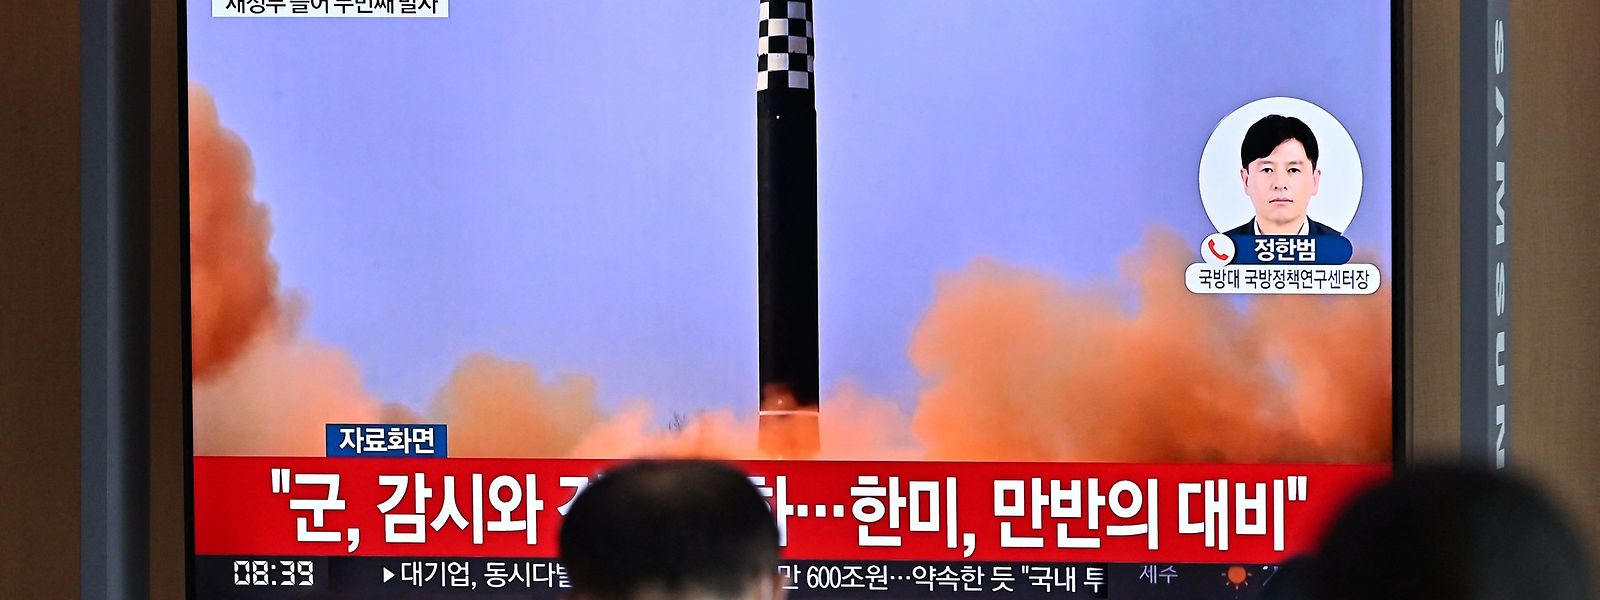 Seit Beginn des Jahres hat Nordkorea viele Raketen getestet.